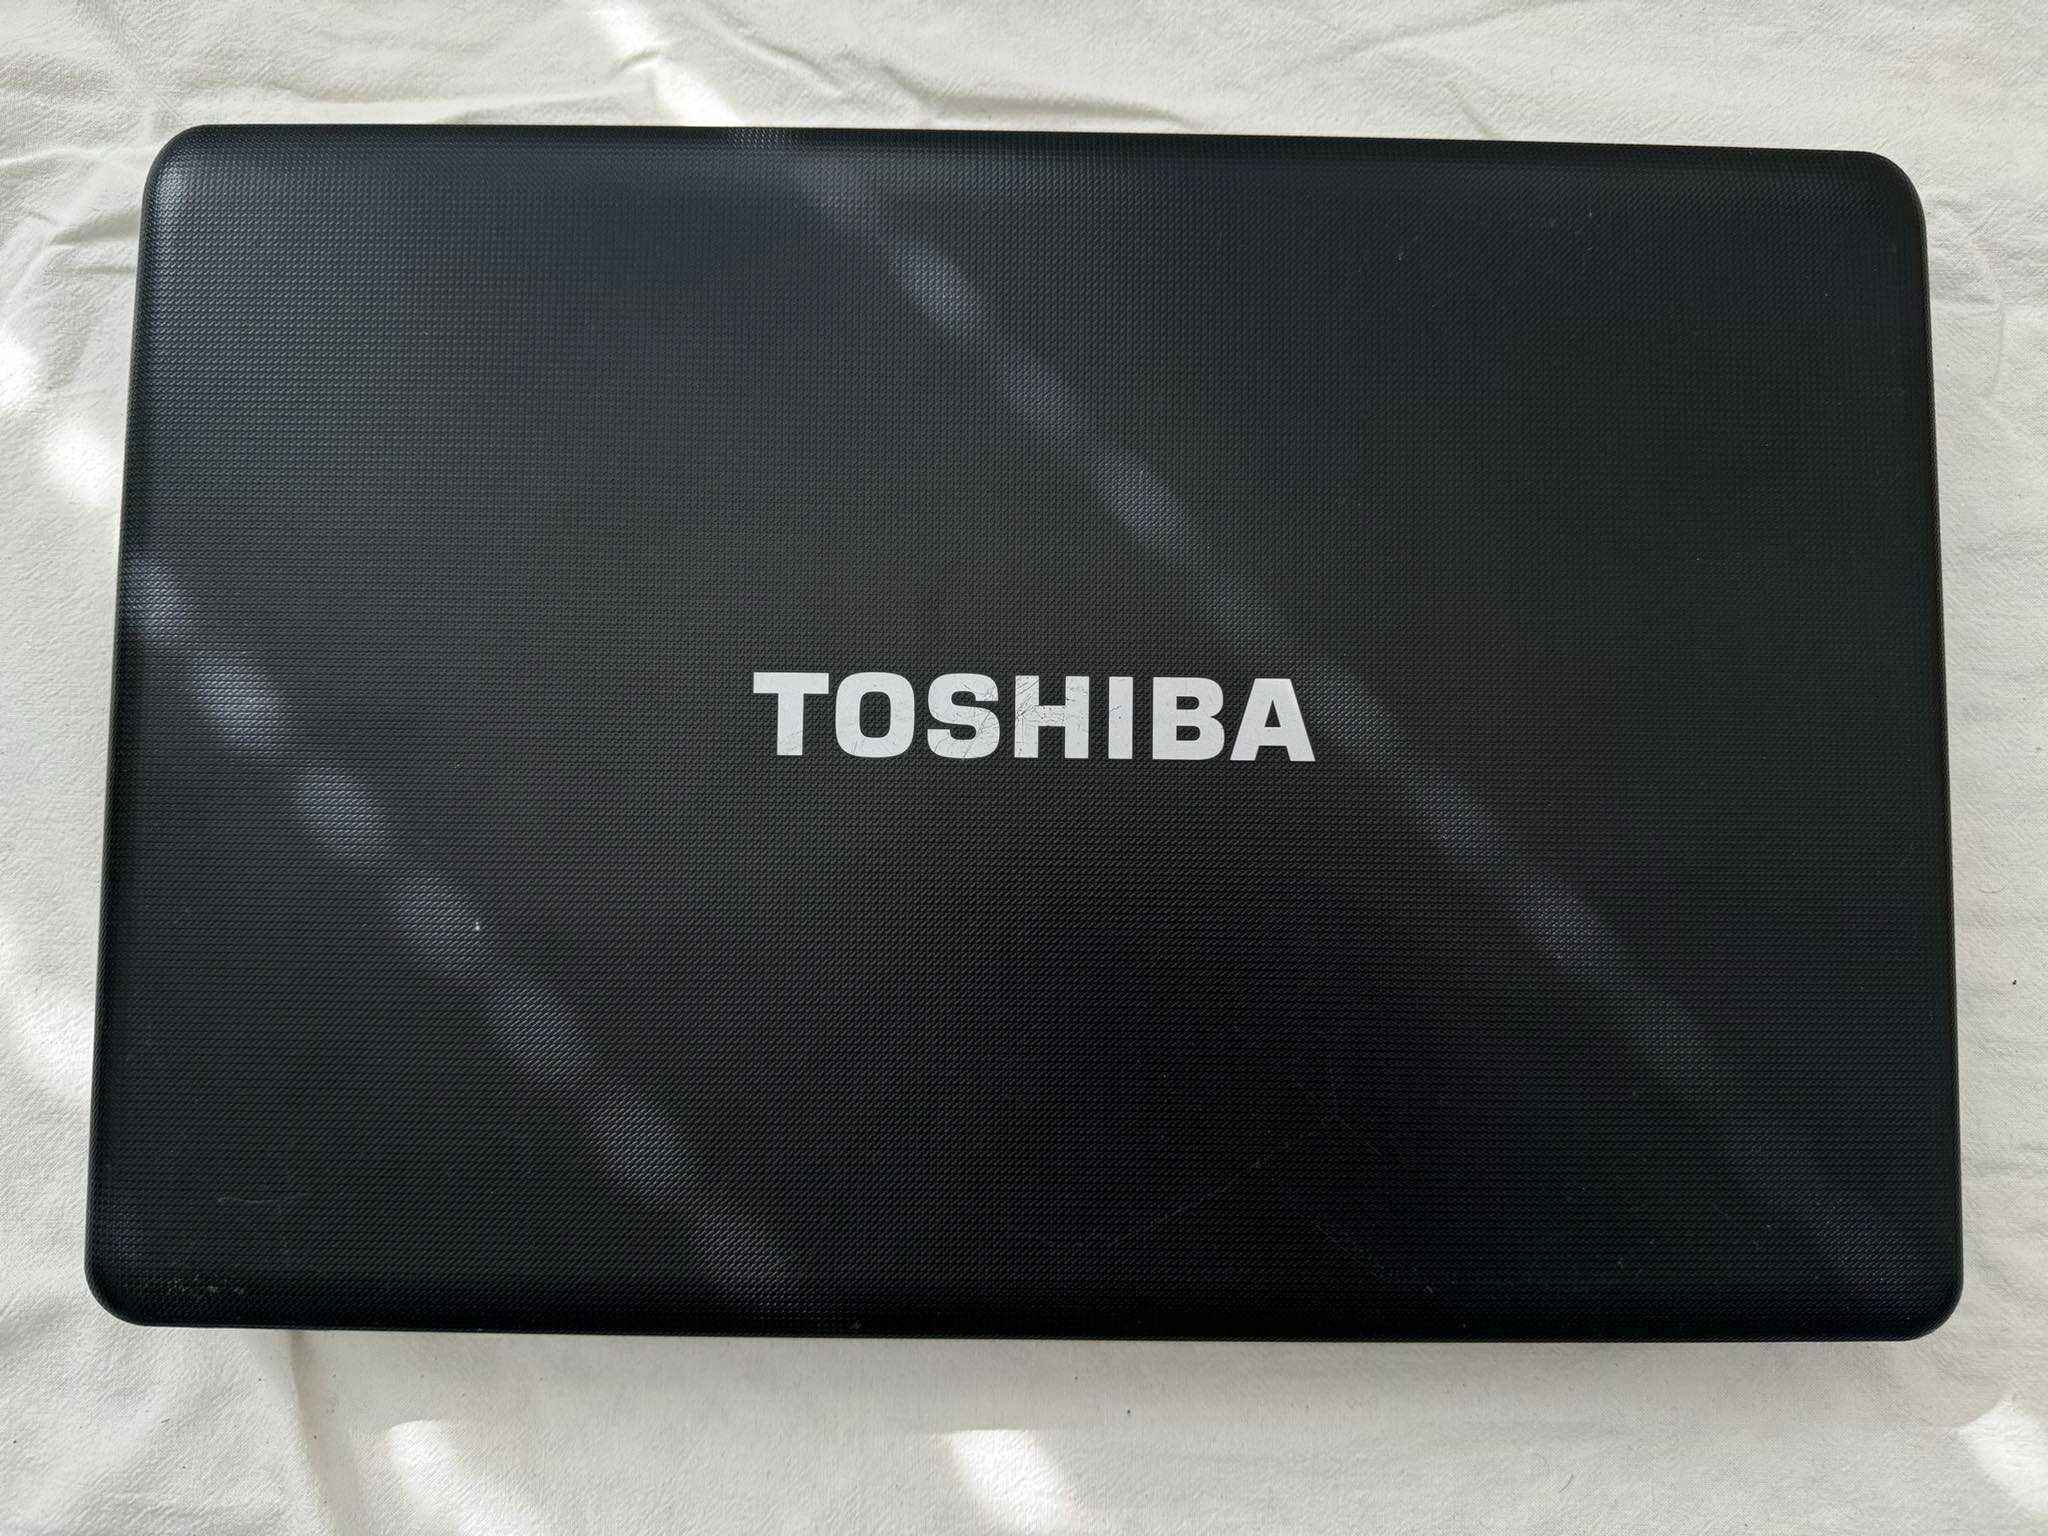 Toshiba Satellite C660 i5